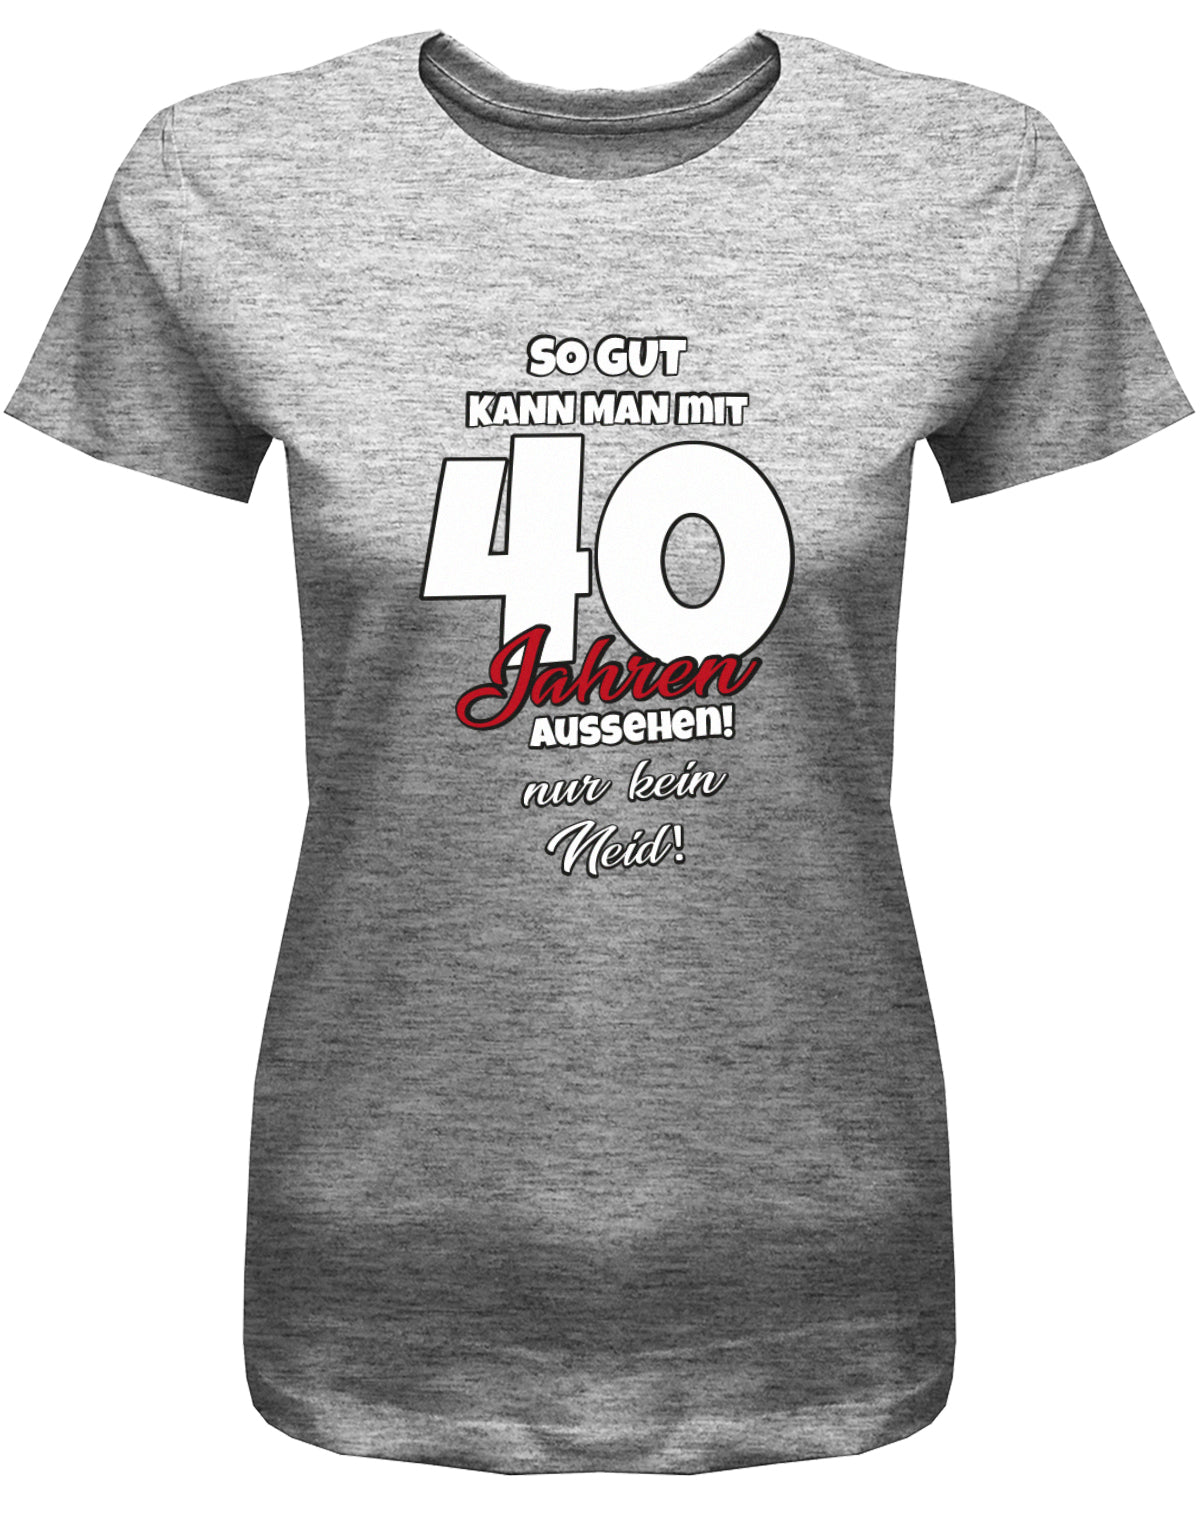 Lustiges T-Shirt zum 40 Geburtstag für die Frau Bedruckt mit So gut kann man mit 40 Jahren aussehen! Nur kein Neid! Grau